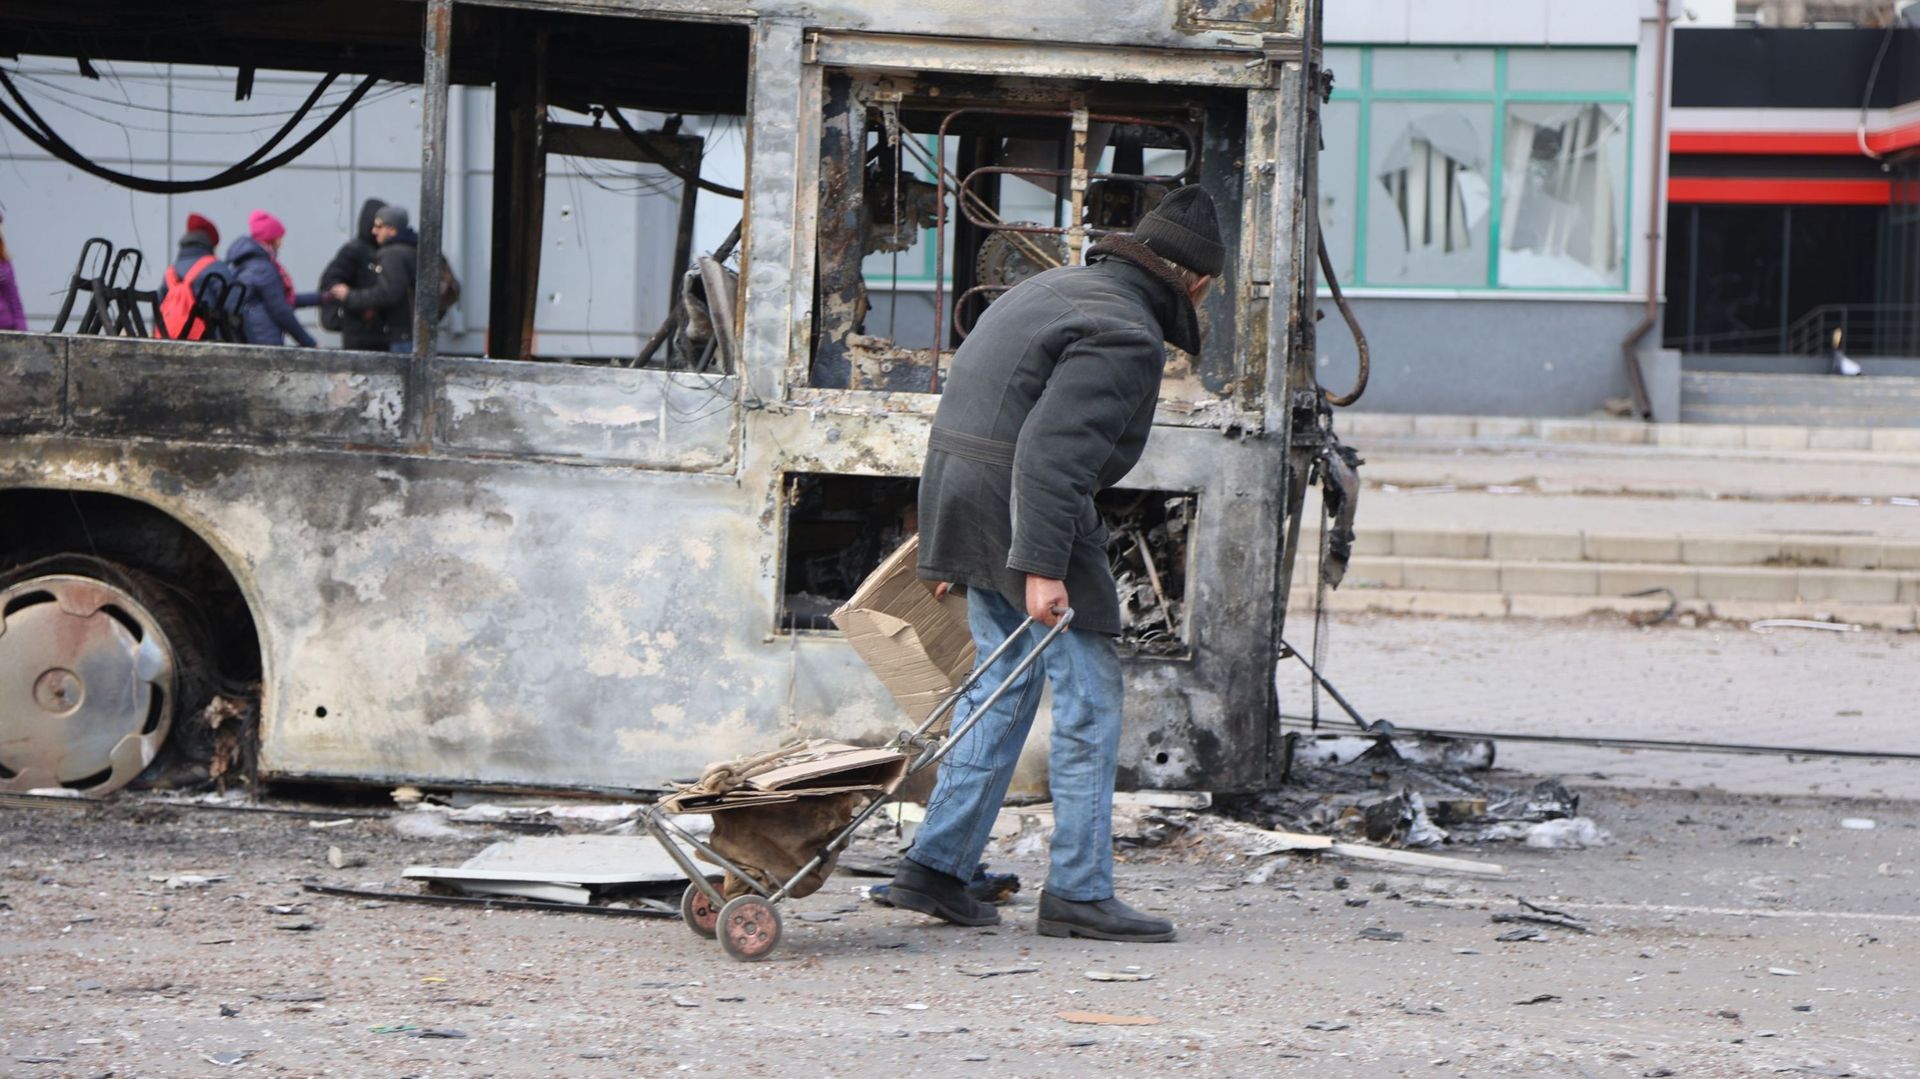 Une vue des bâtiments et des véhicules endommagés après un bombardement dans la ville ukrainienne de Mariupol sous le contrôle de l’armée russe et des séparatistes pro-russes, le 29 mars 2022.